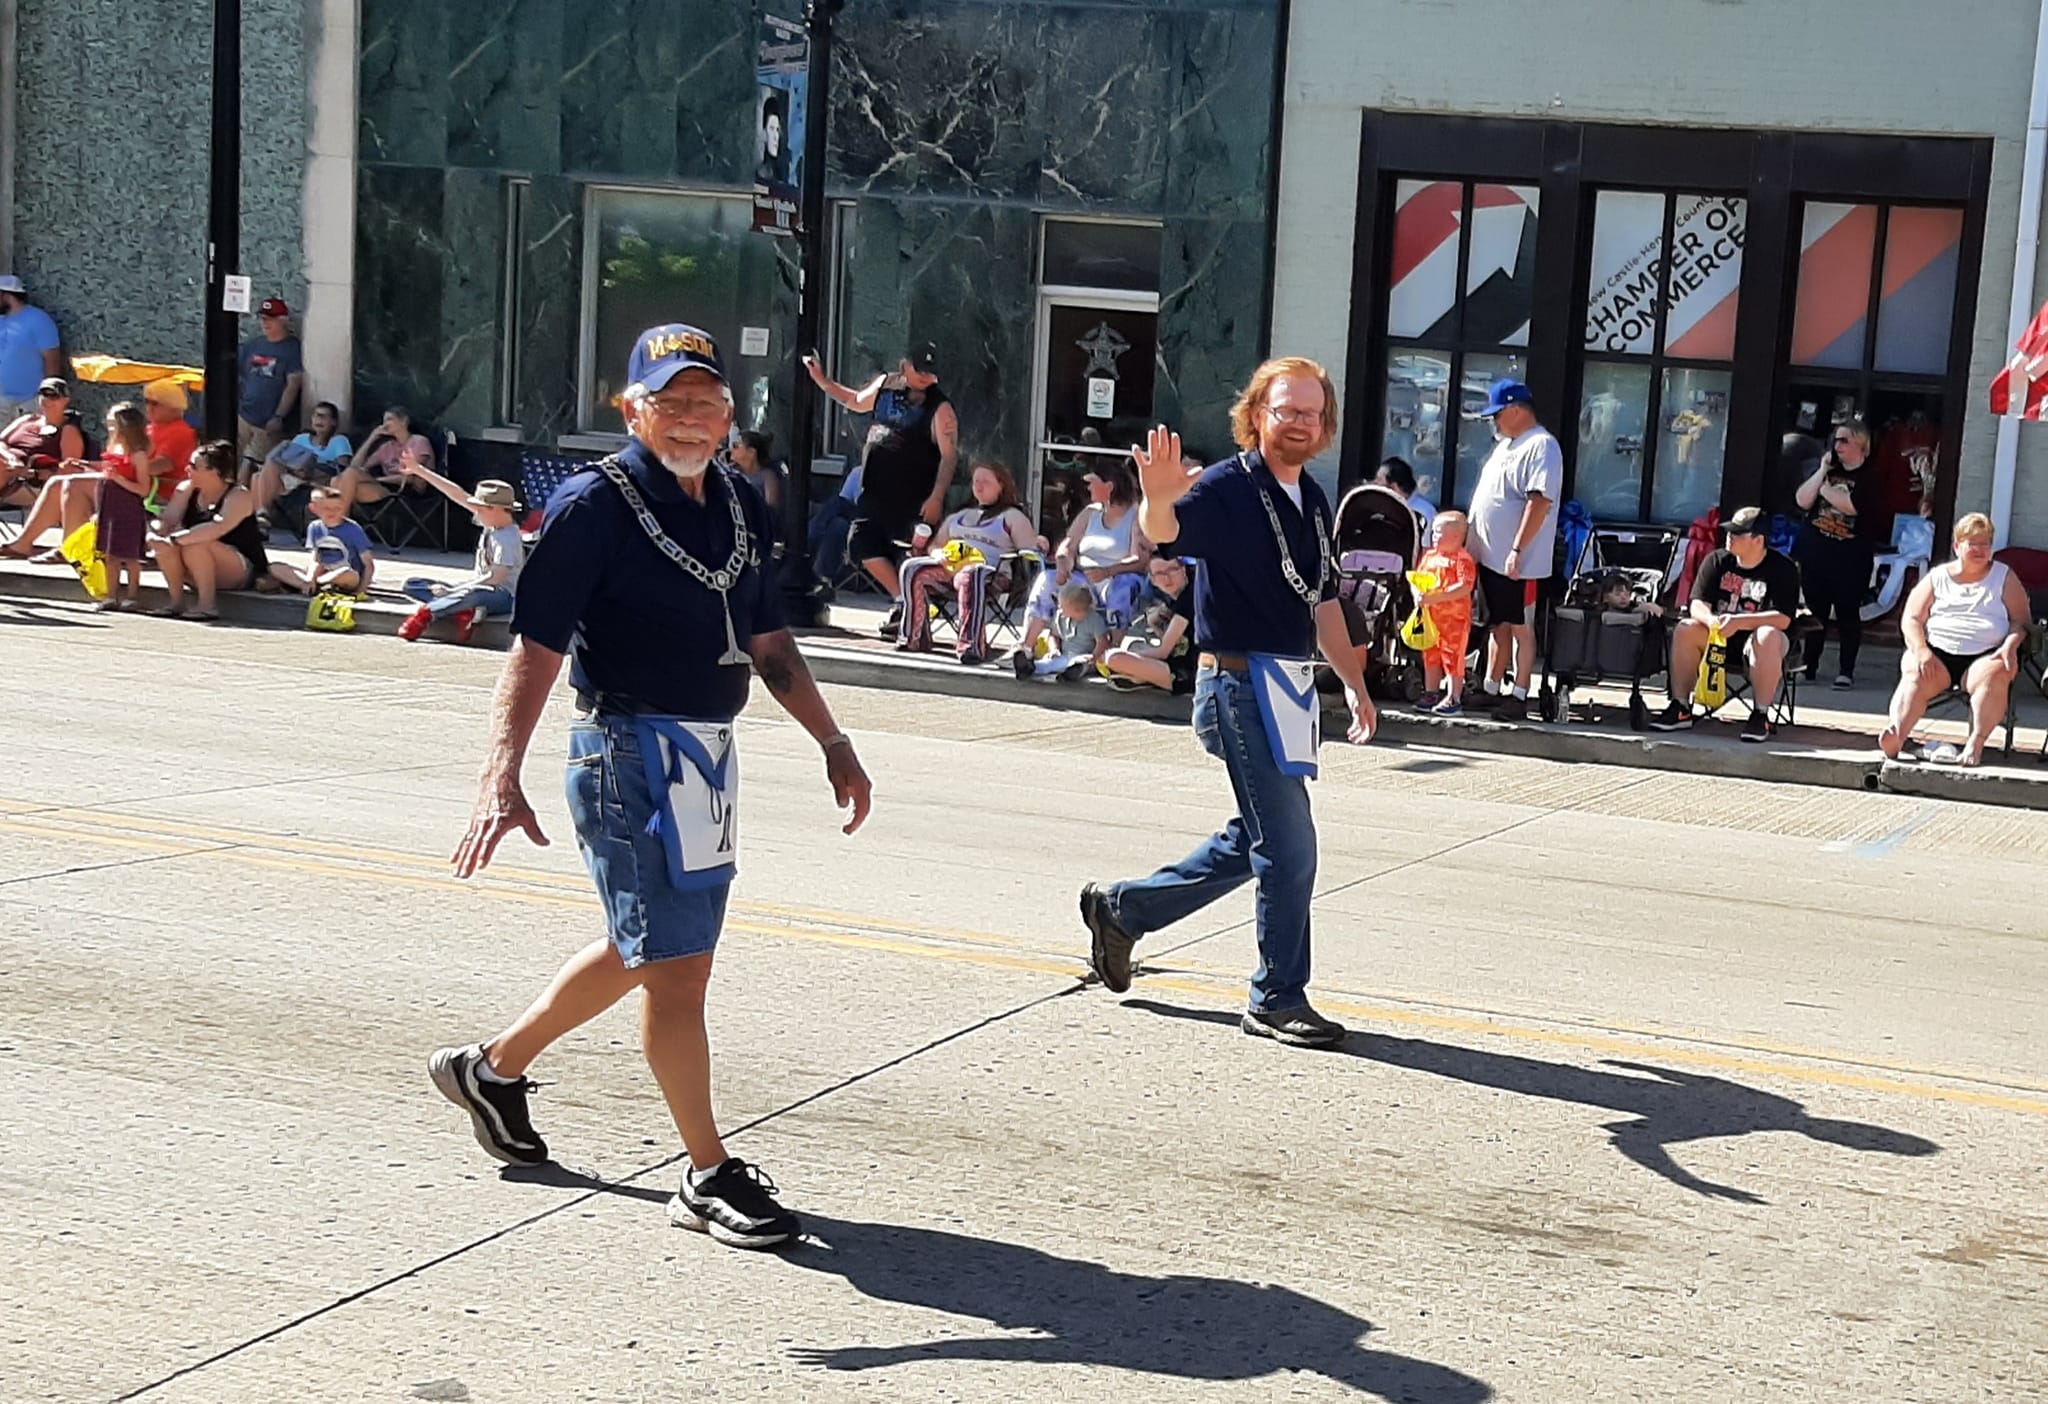 Freemasons walking in a parade and waving.